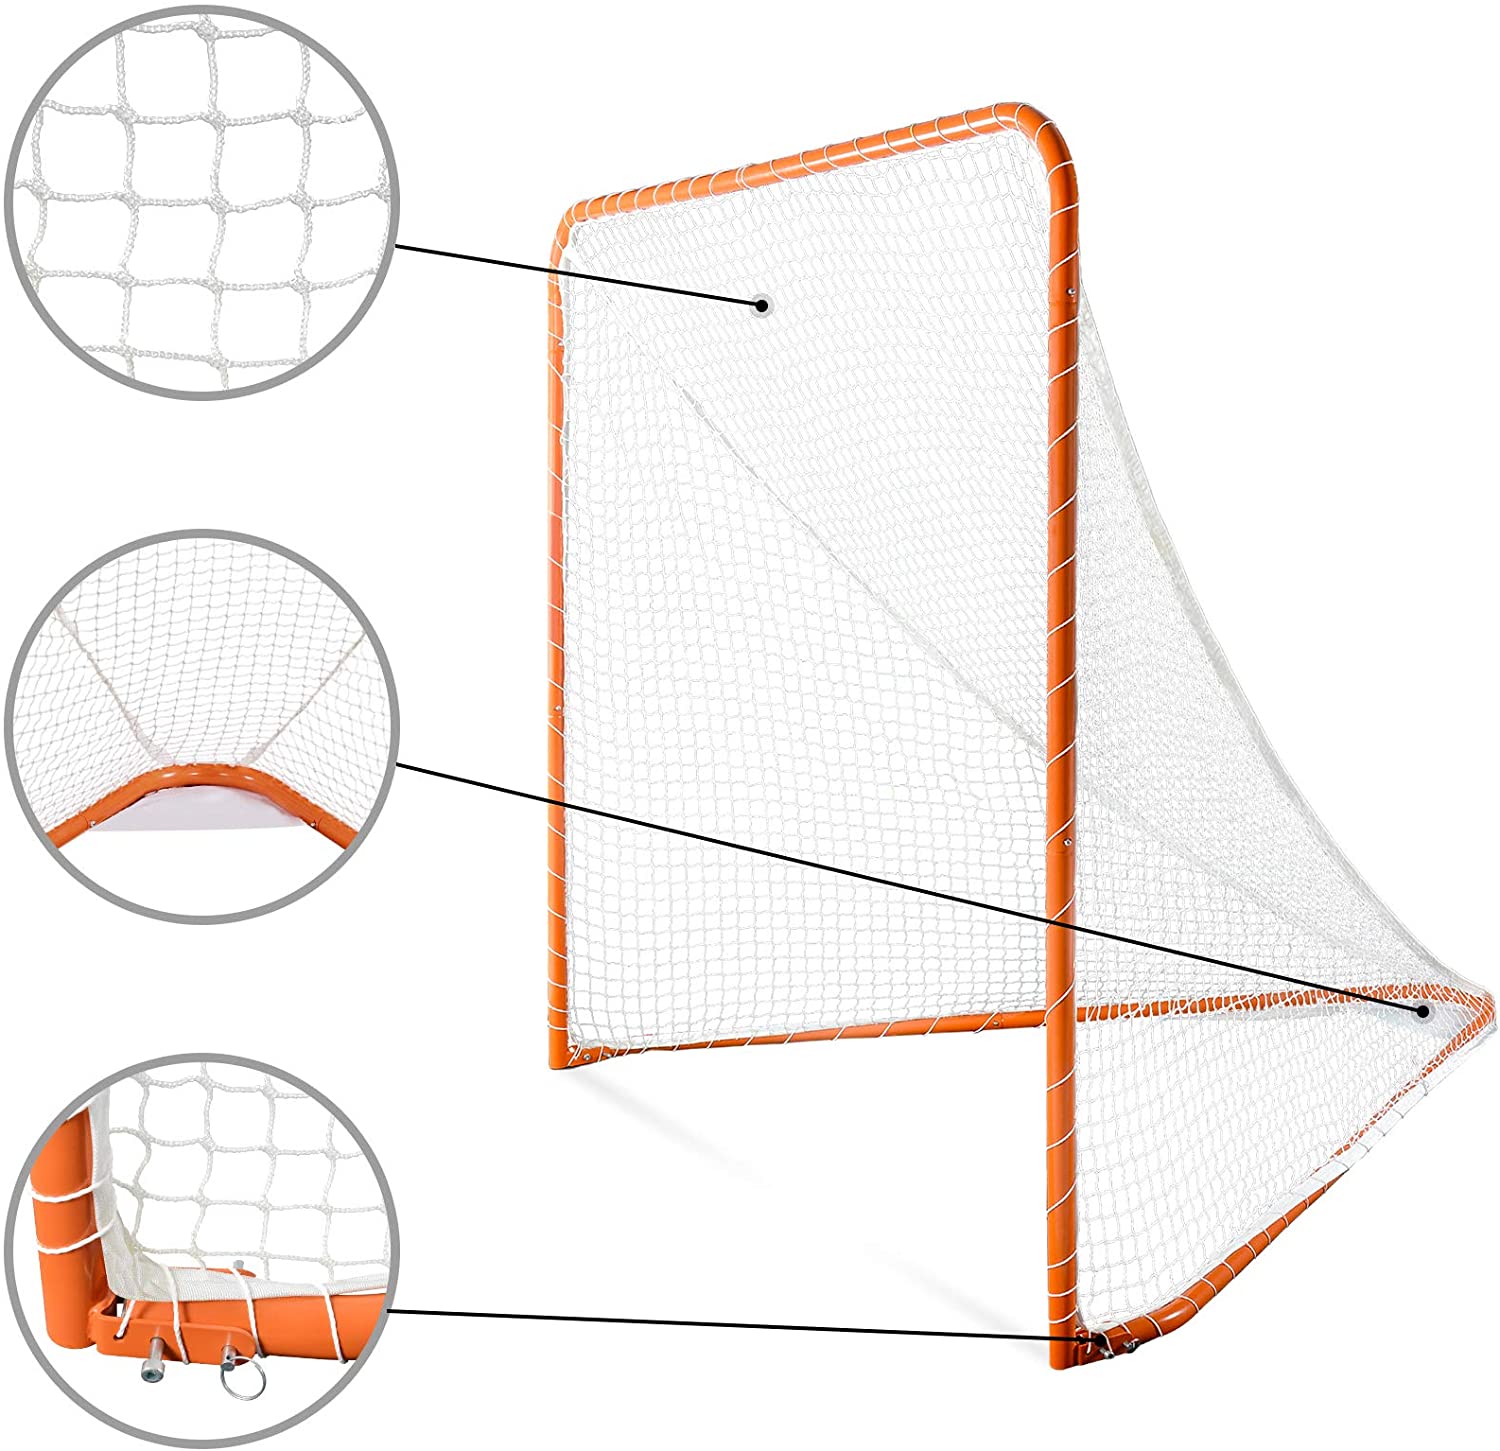 Red de Lacrosse de 6'x6' con portería de Lacrosse portátil con marco de acero